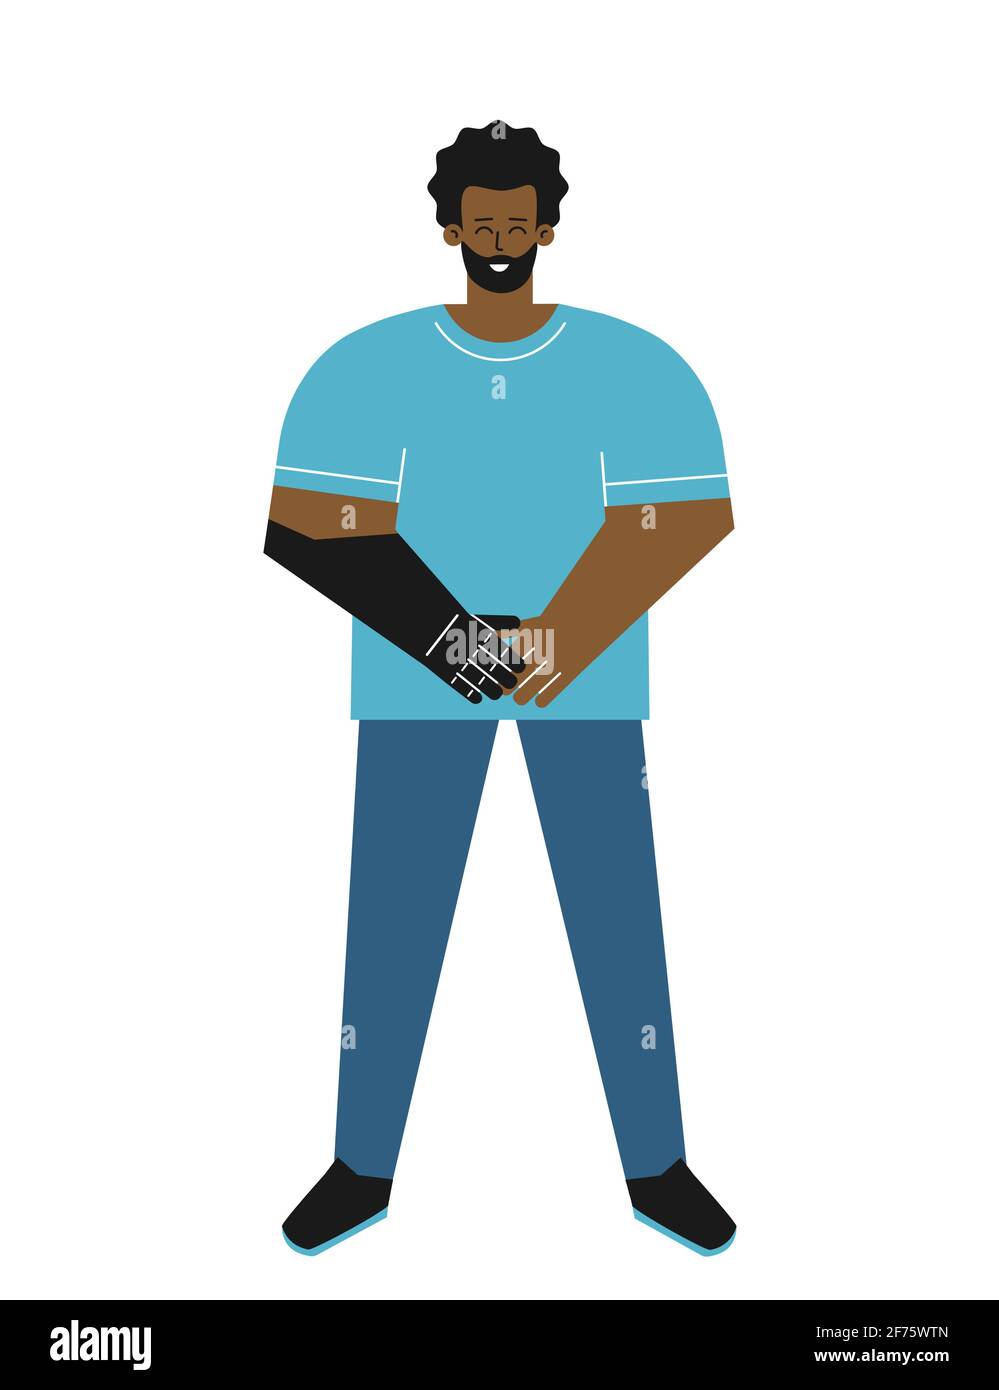 Vektor isoliert flache Illustration mit behinderten Kerl. Cartoon african american Mann hat künstliche Gliedmaßen nach Amputation. Er ist glücklich, bionischen Arm zu verwenden Stock Vektor